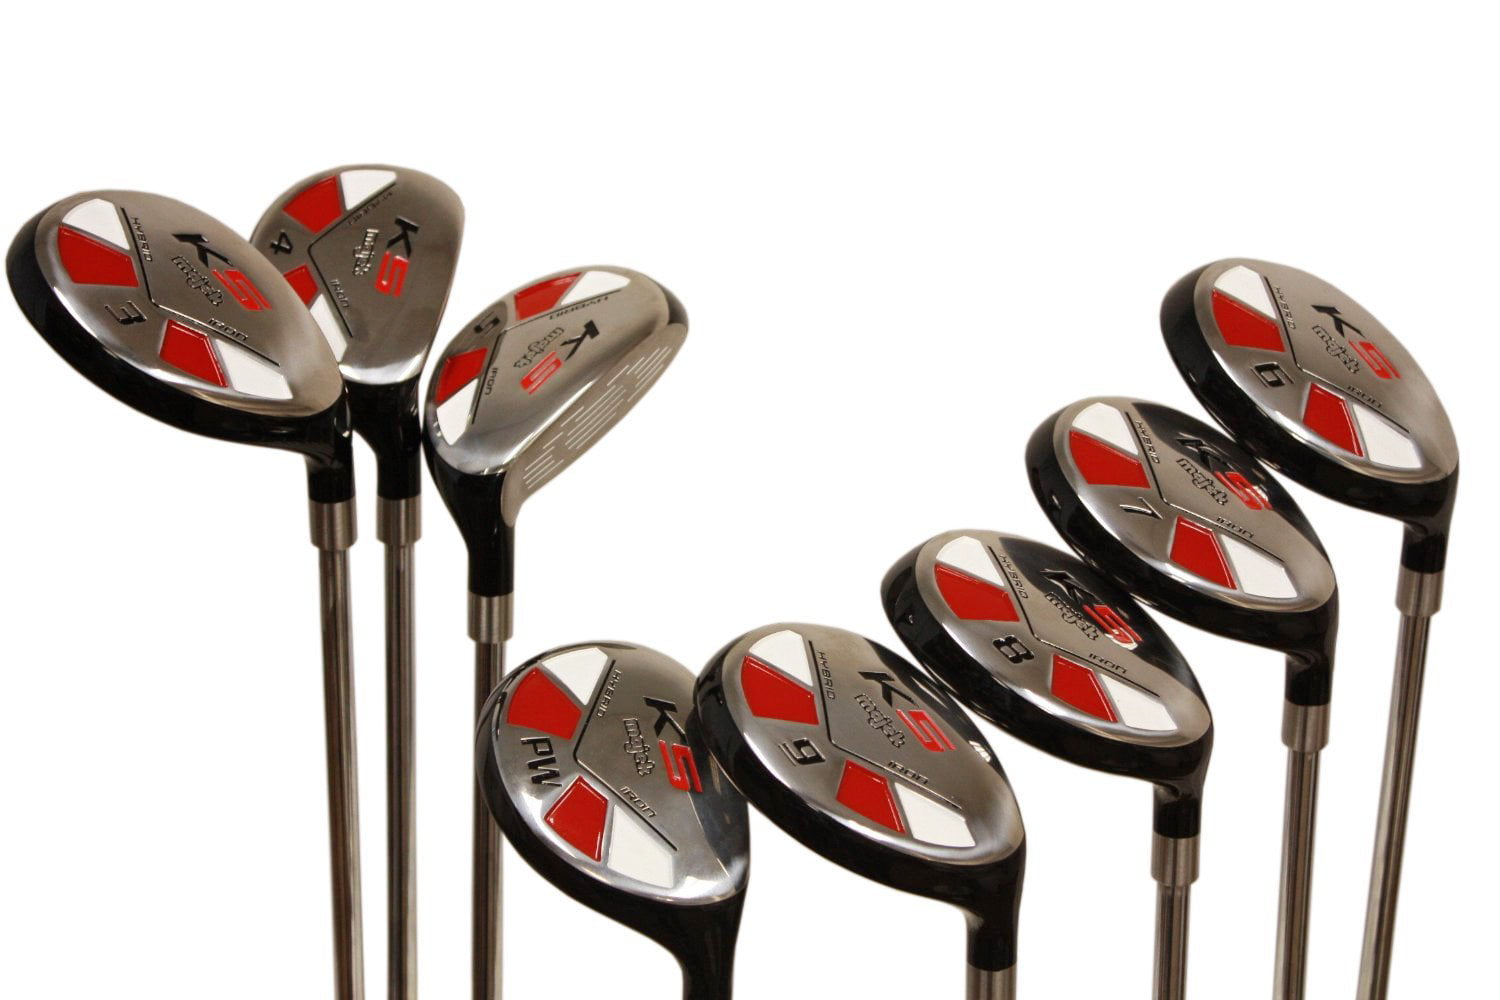 Senior Men's Majek Golf All Hybrid Complete Full Set, which 